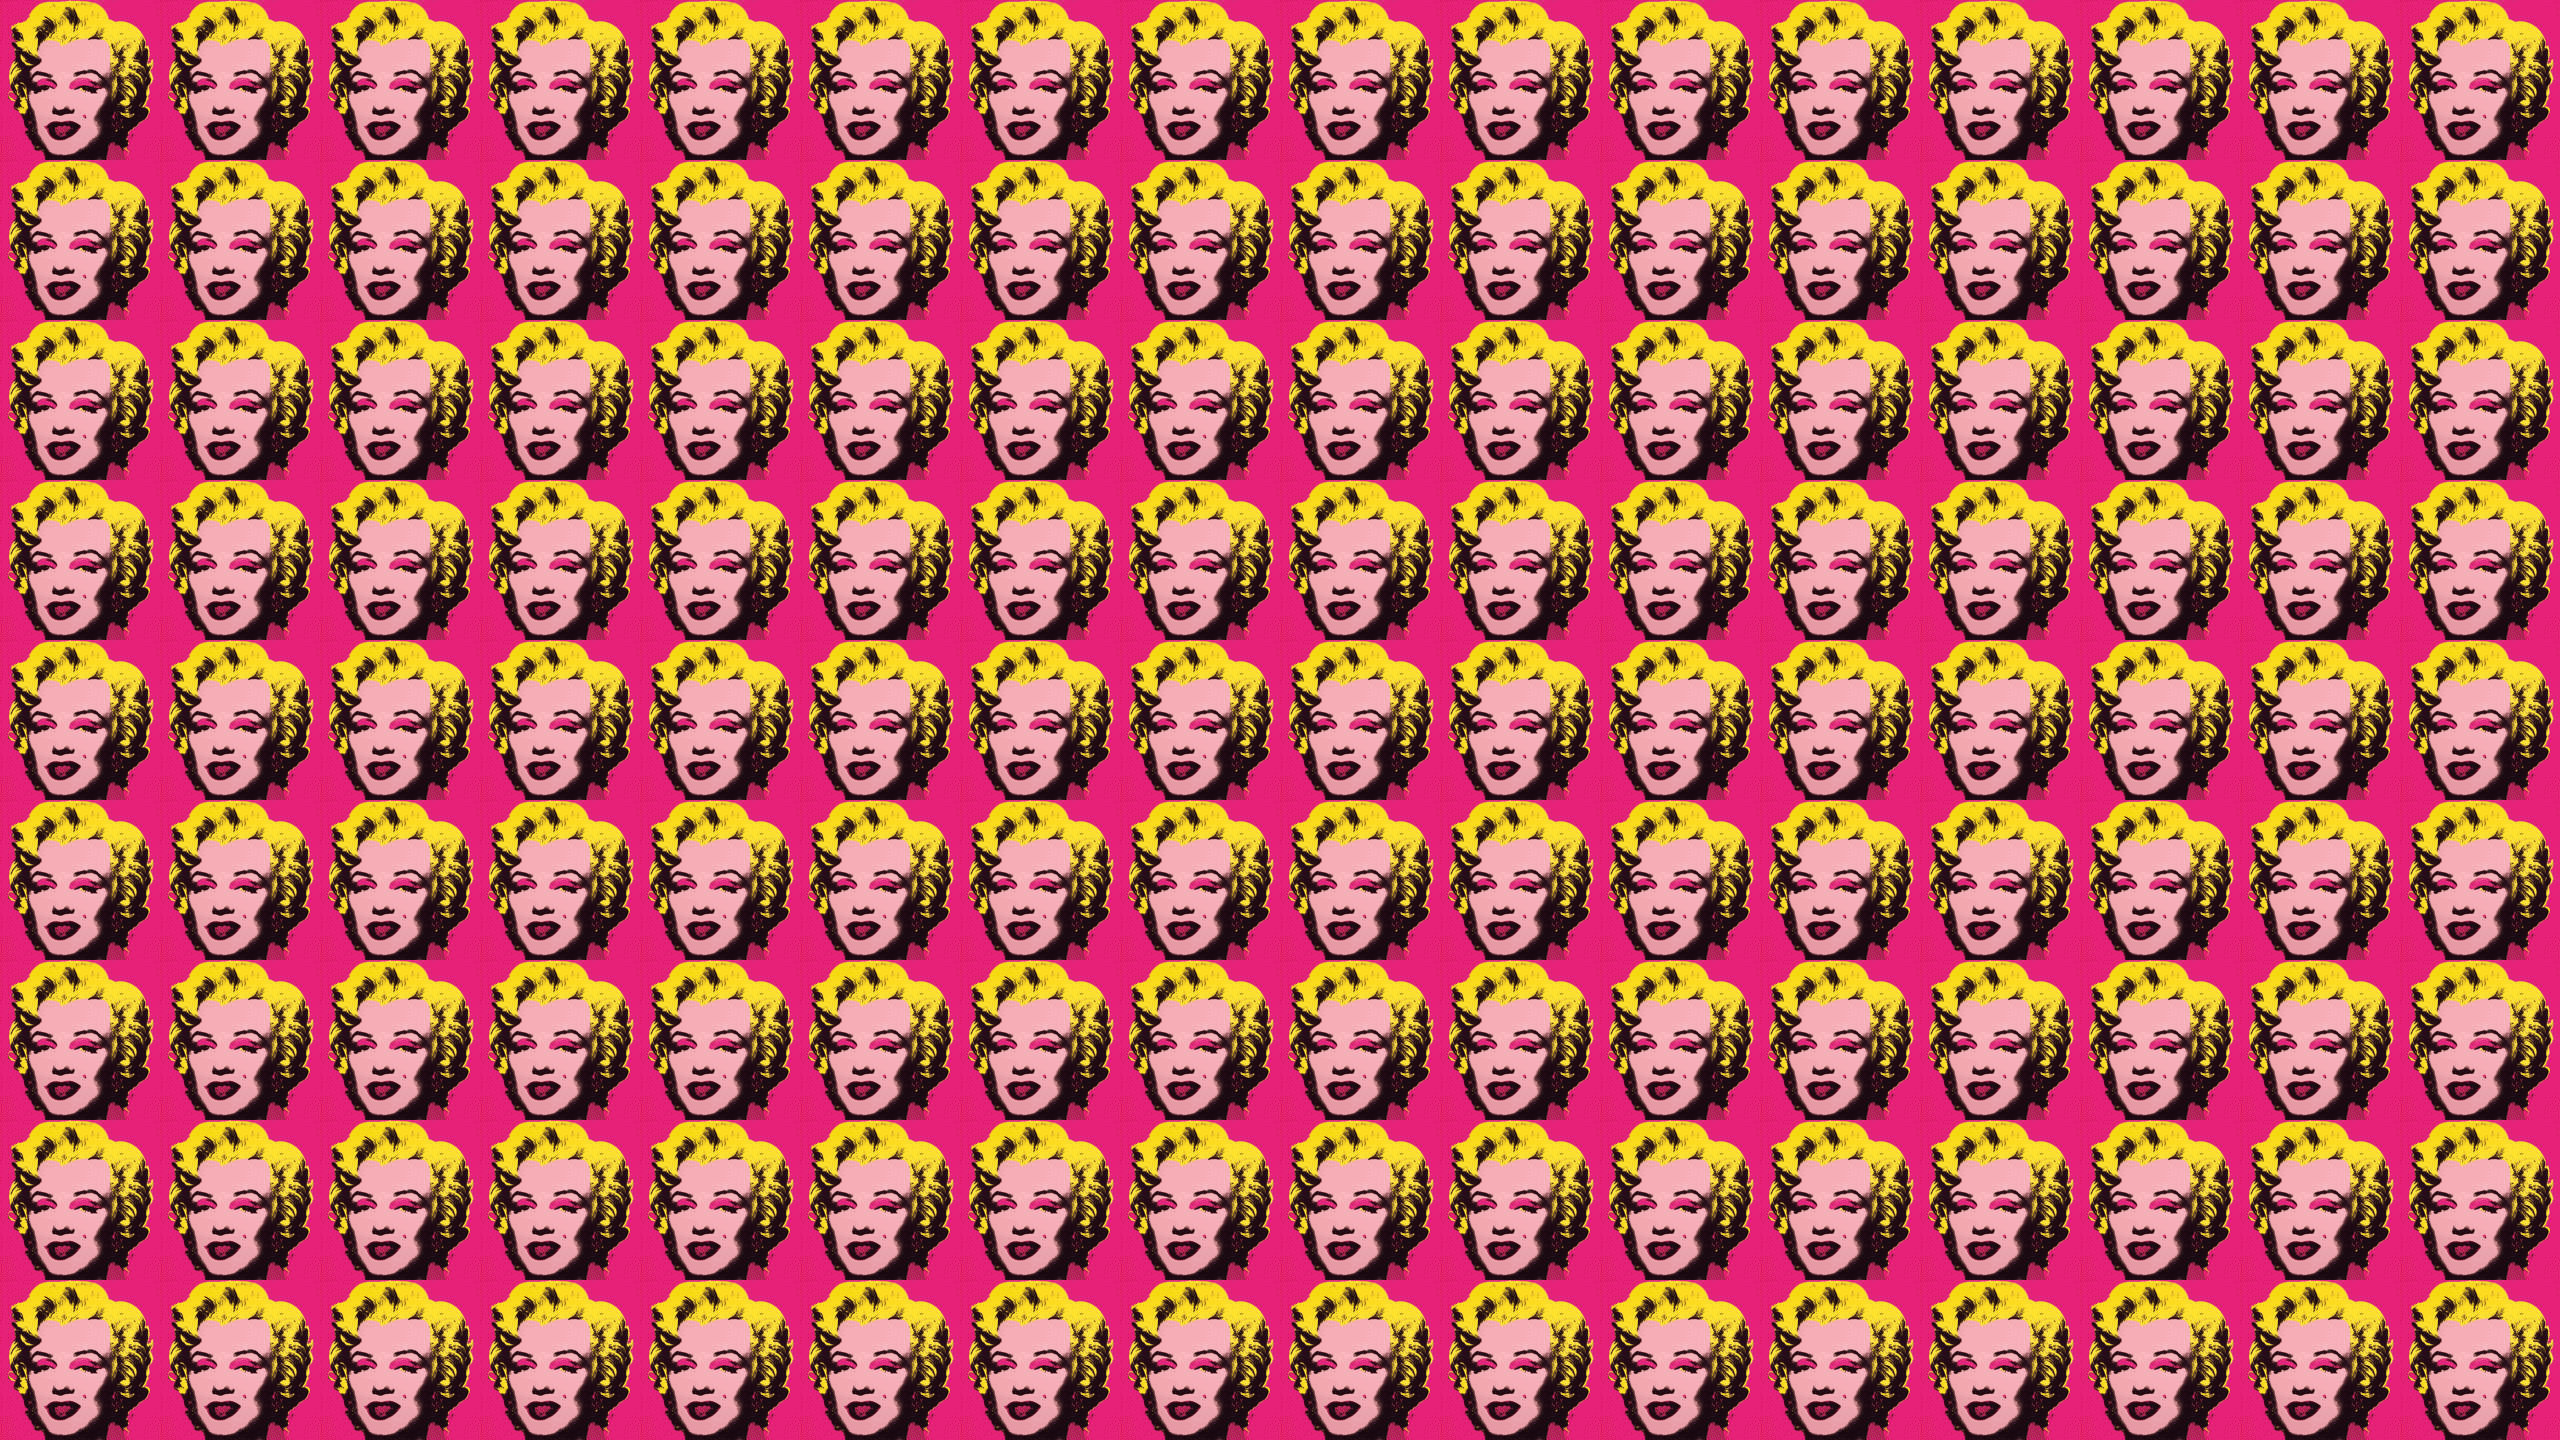 Wallpaper For > Twitter Background Marilyn Monroe